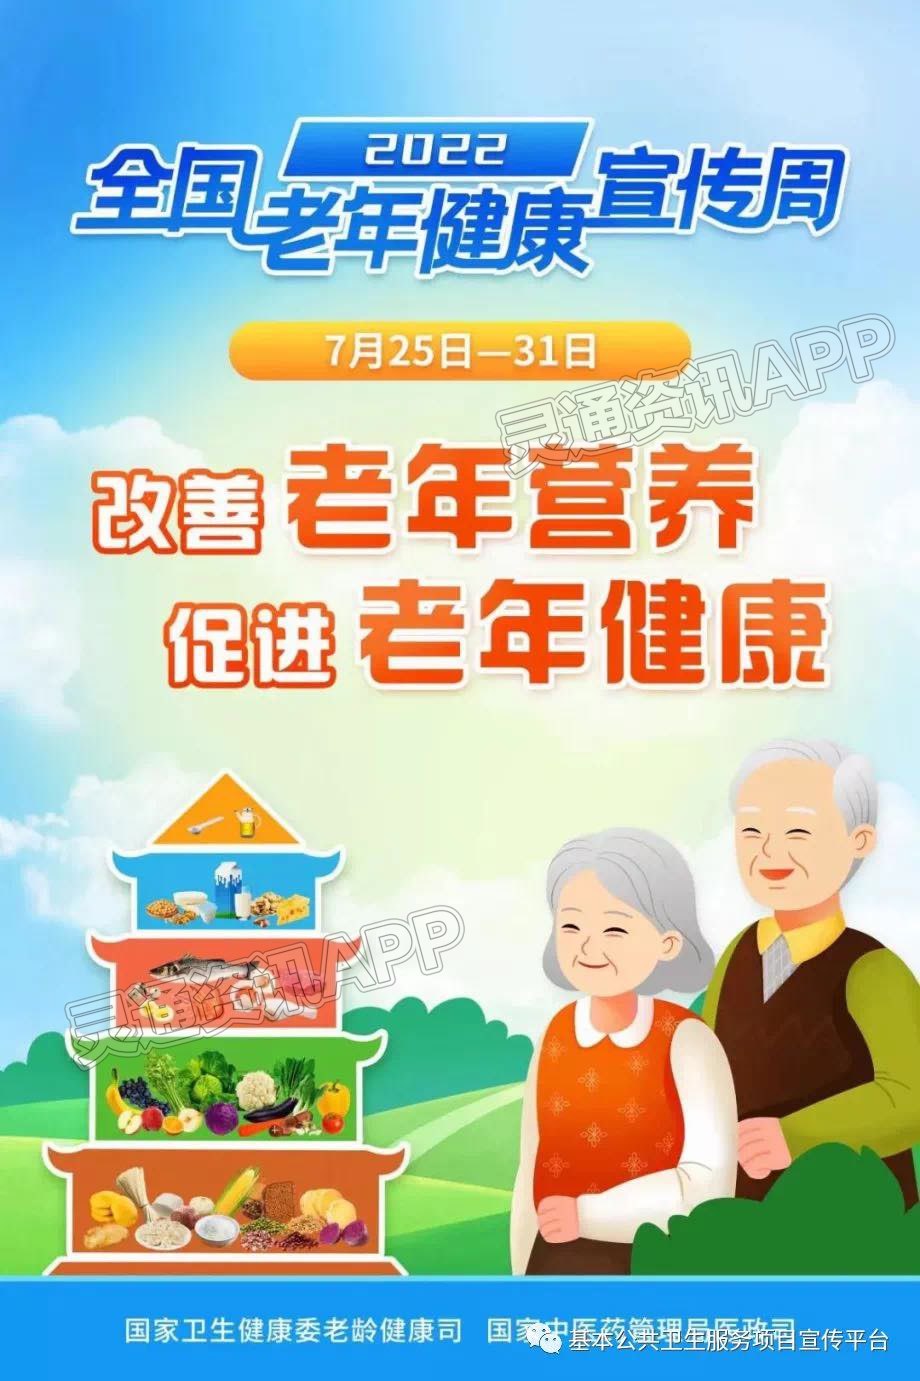 2022老年健康宣传周——改善老年营养 促进老年健康‘pg娱乐电子游戏官网APP下载’(图1)